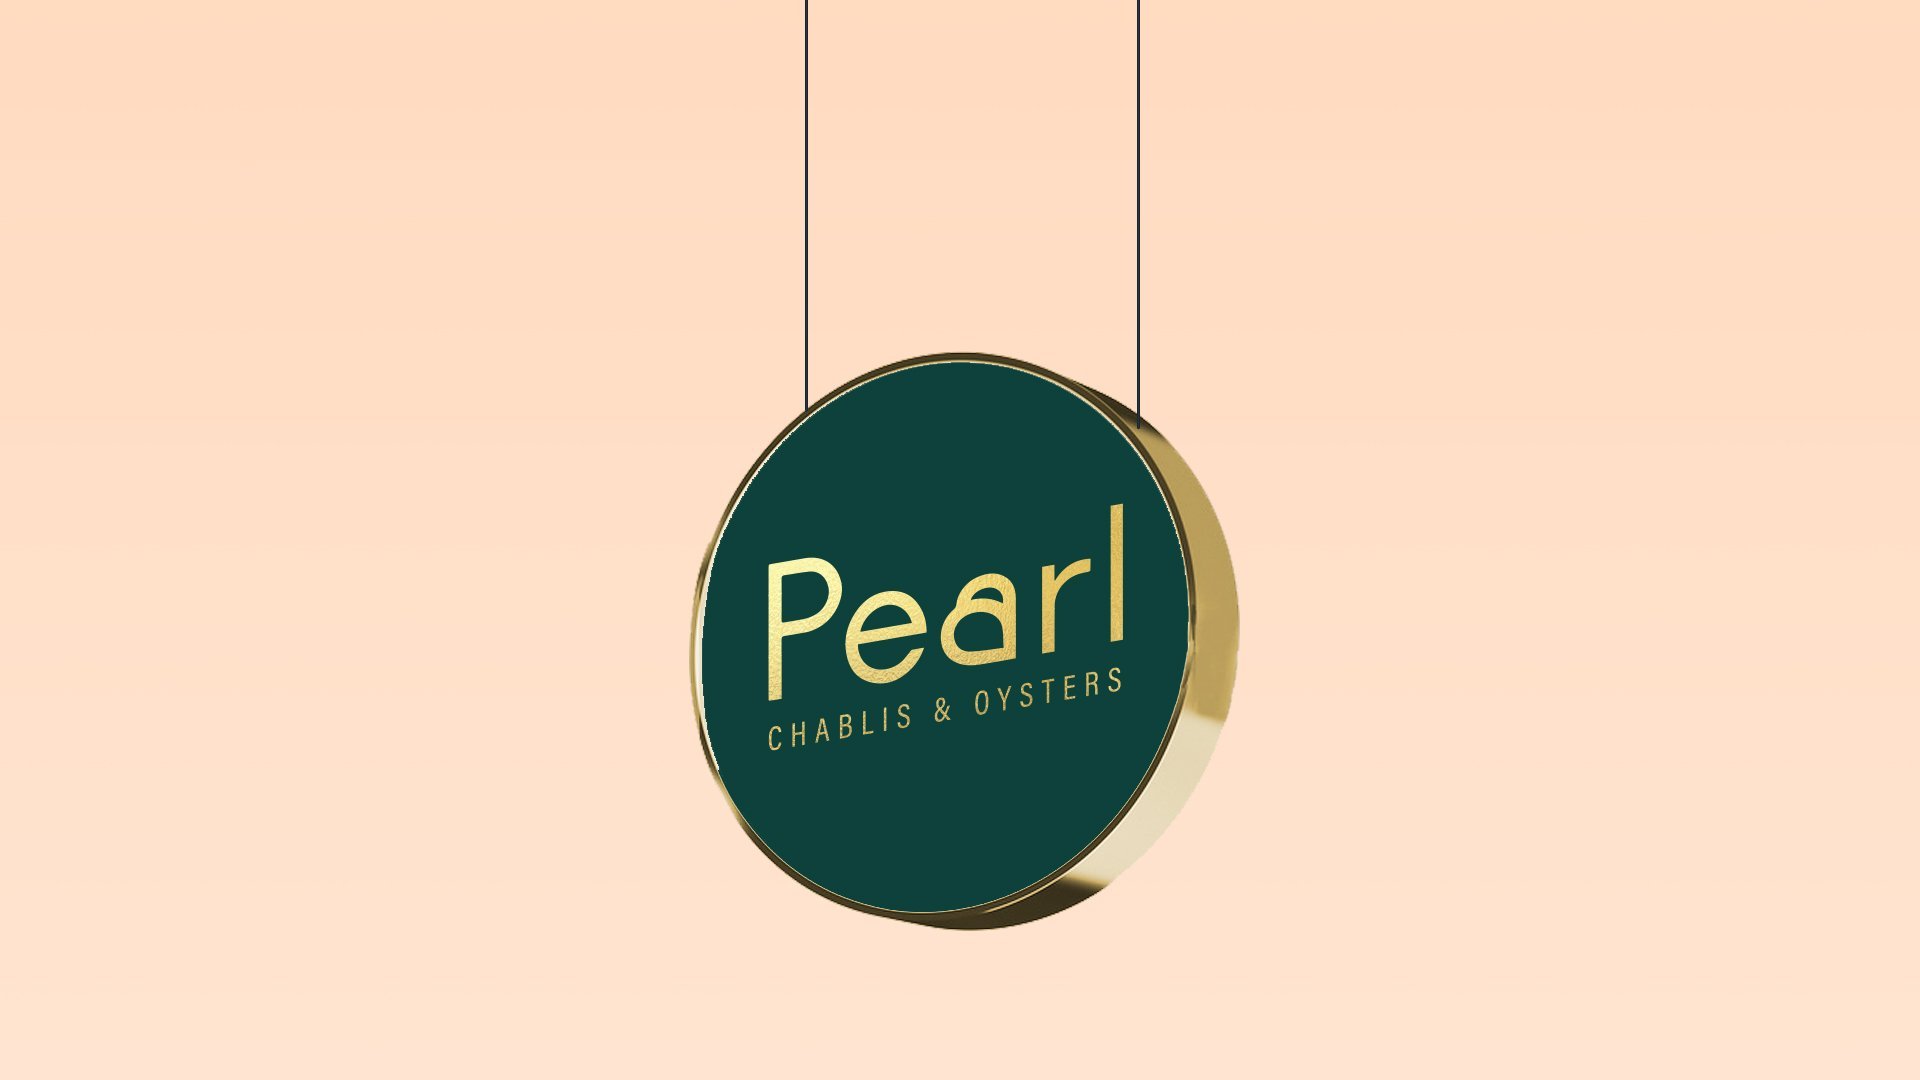 PEARL CHABLIS & OYSTERS——珍珠夏布利酒和牡蛎, 墨尔本